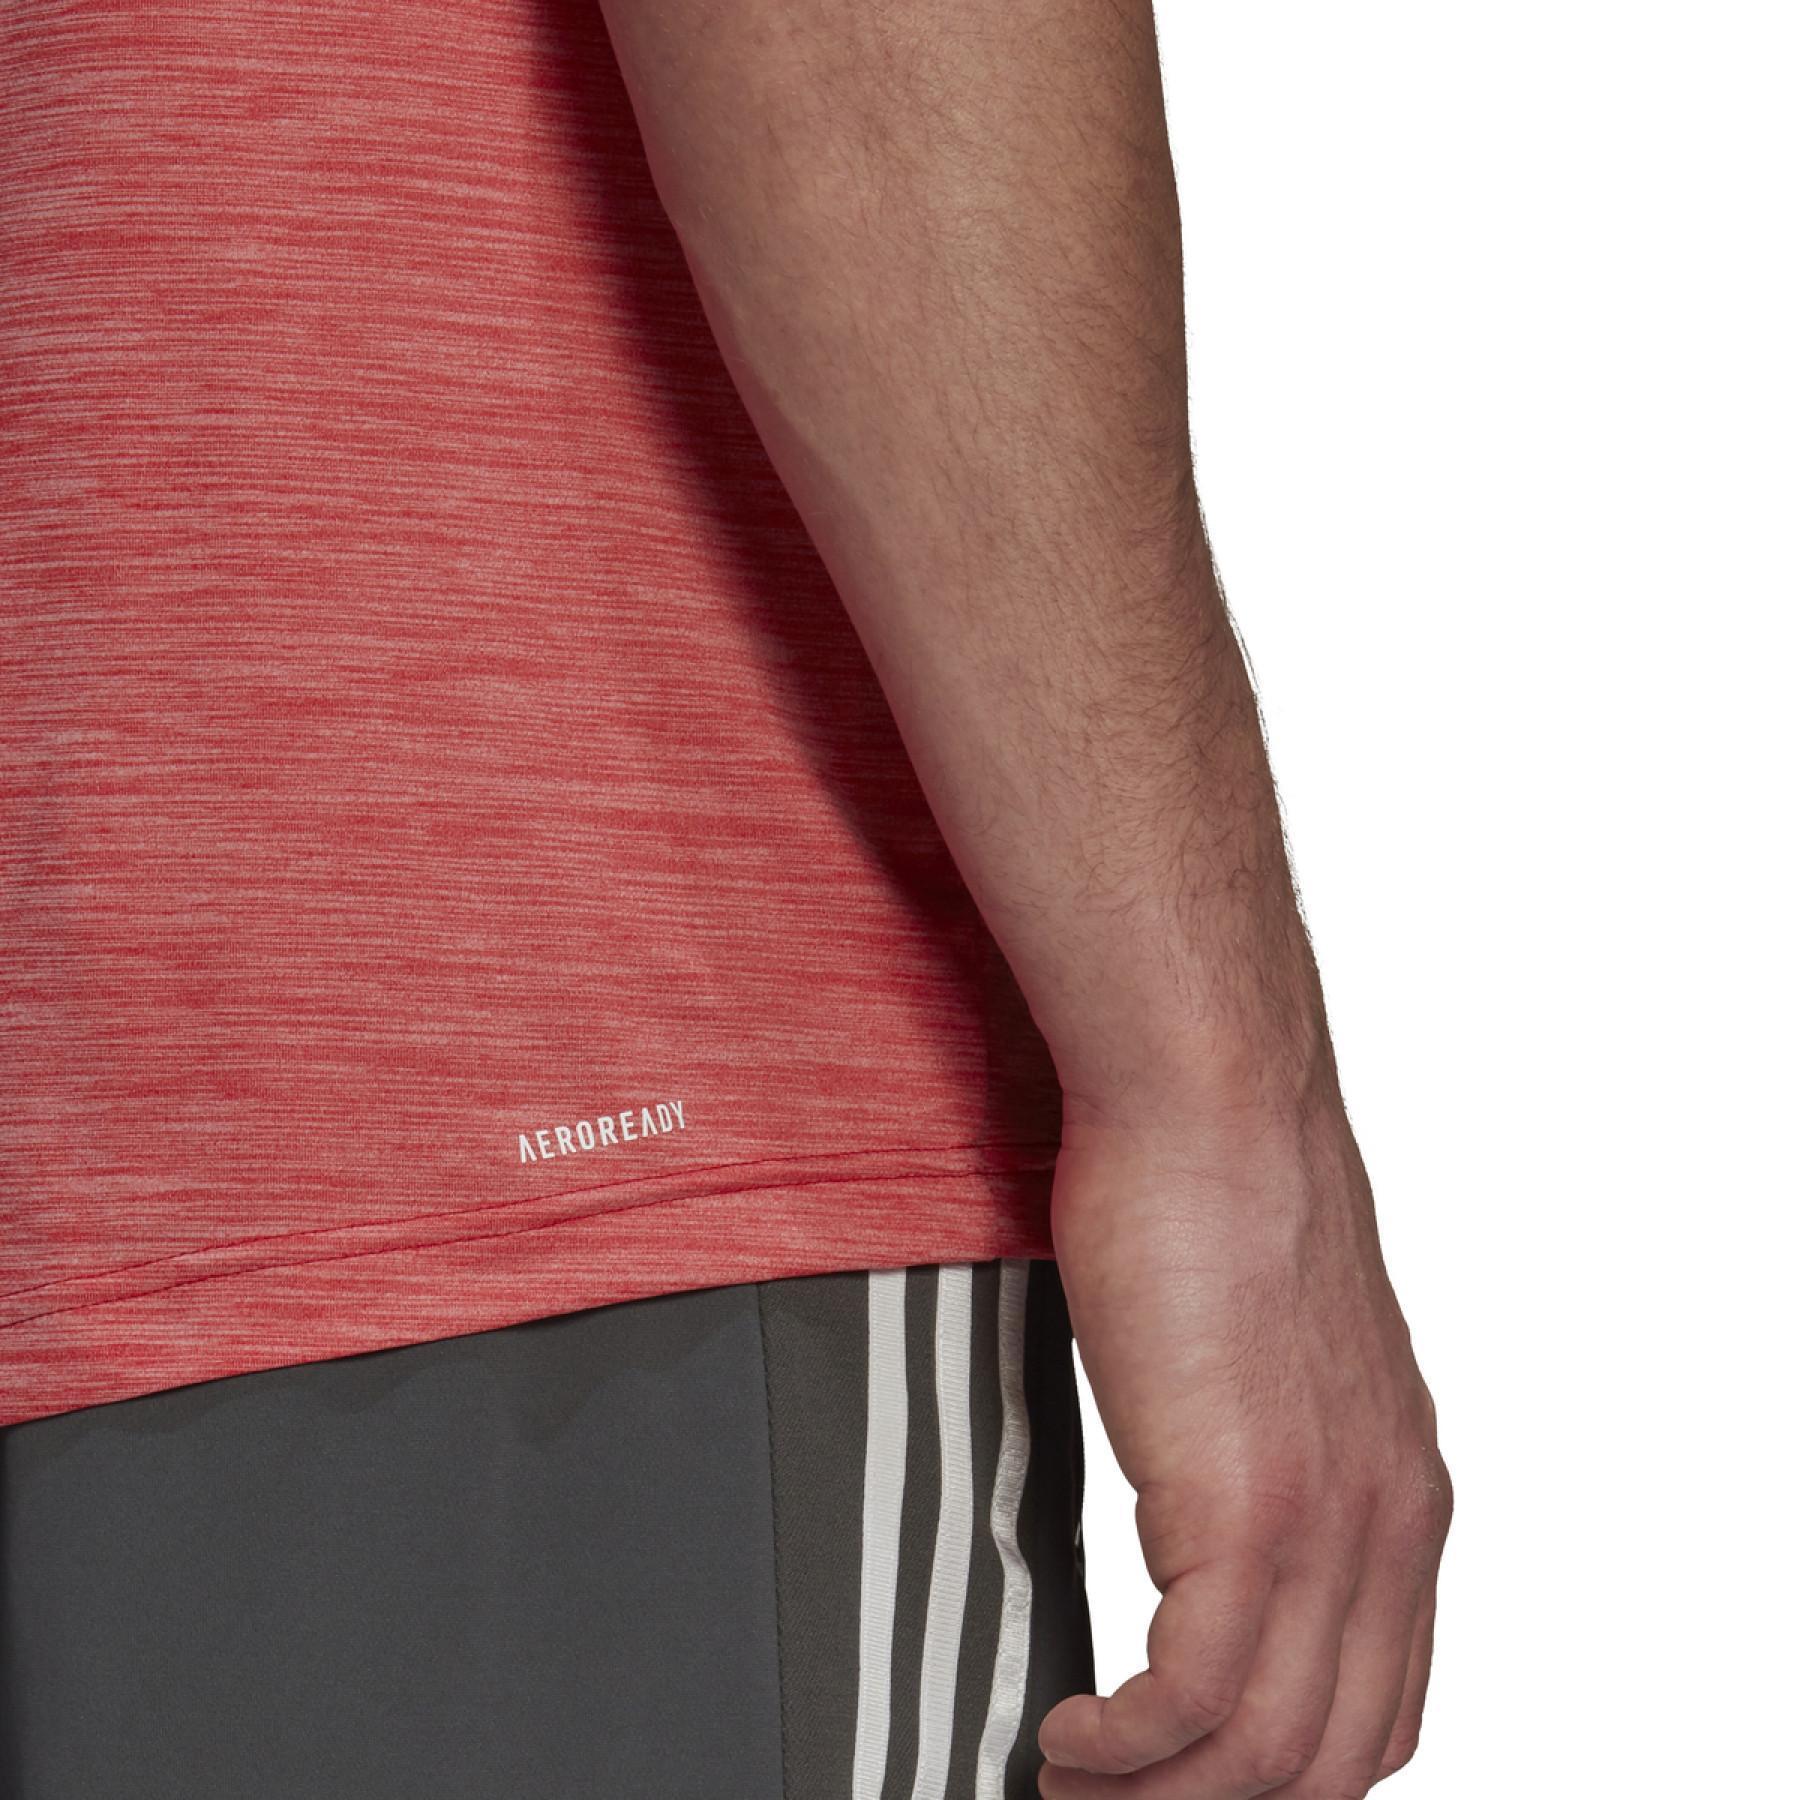 Stretch T-shirt adidas Aeroready Designed To Move Sport